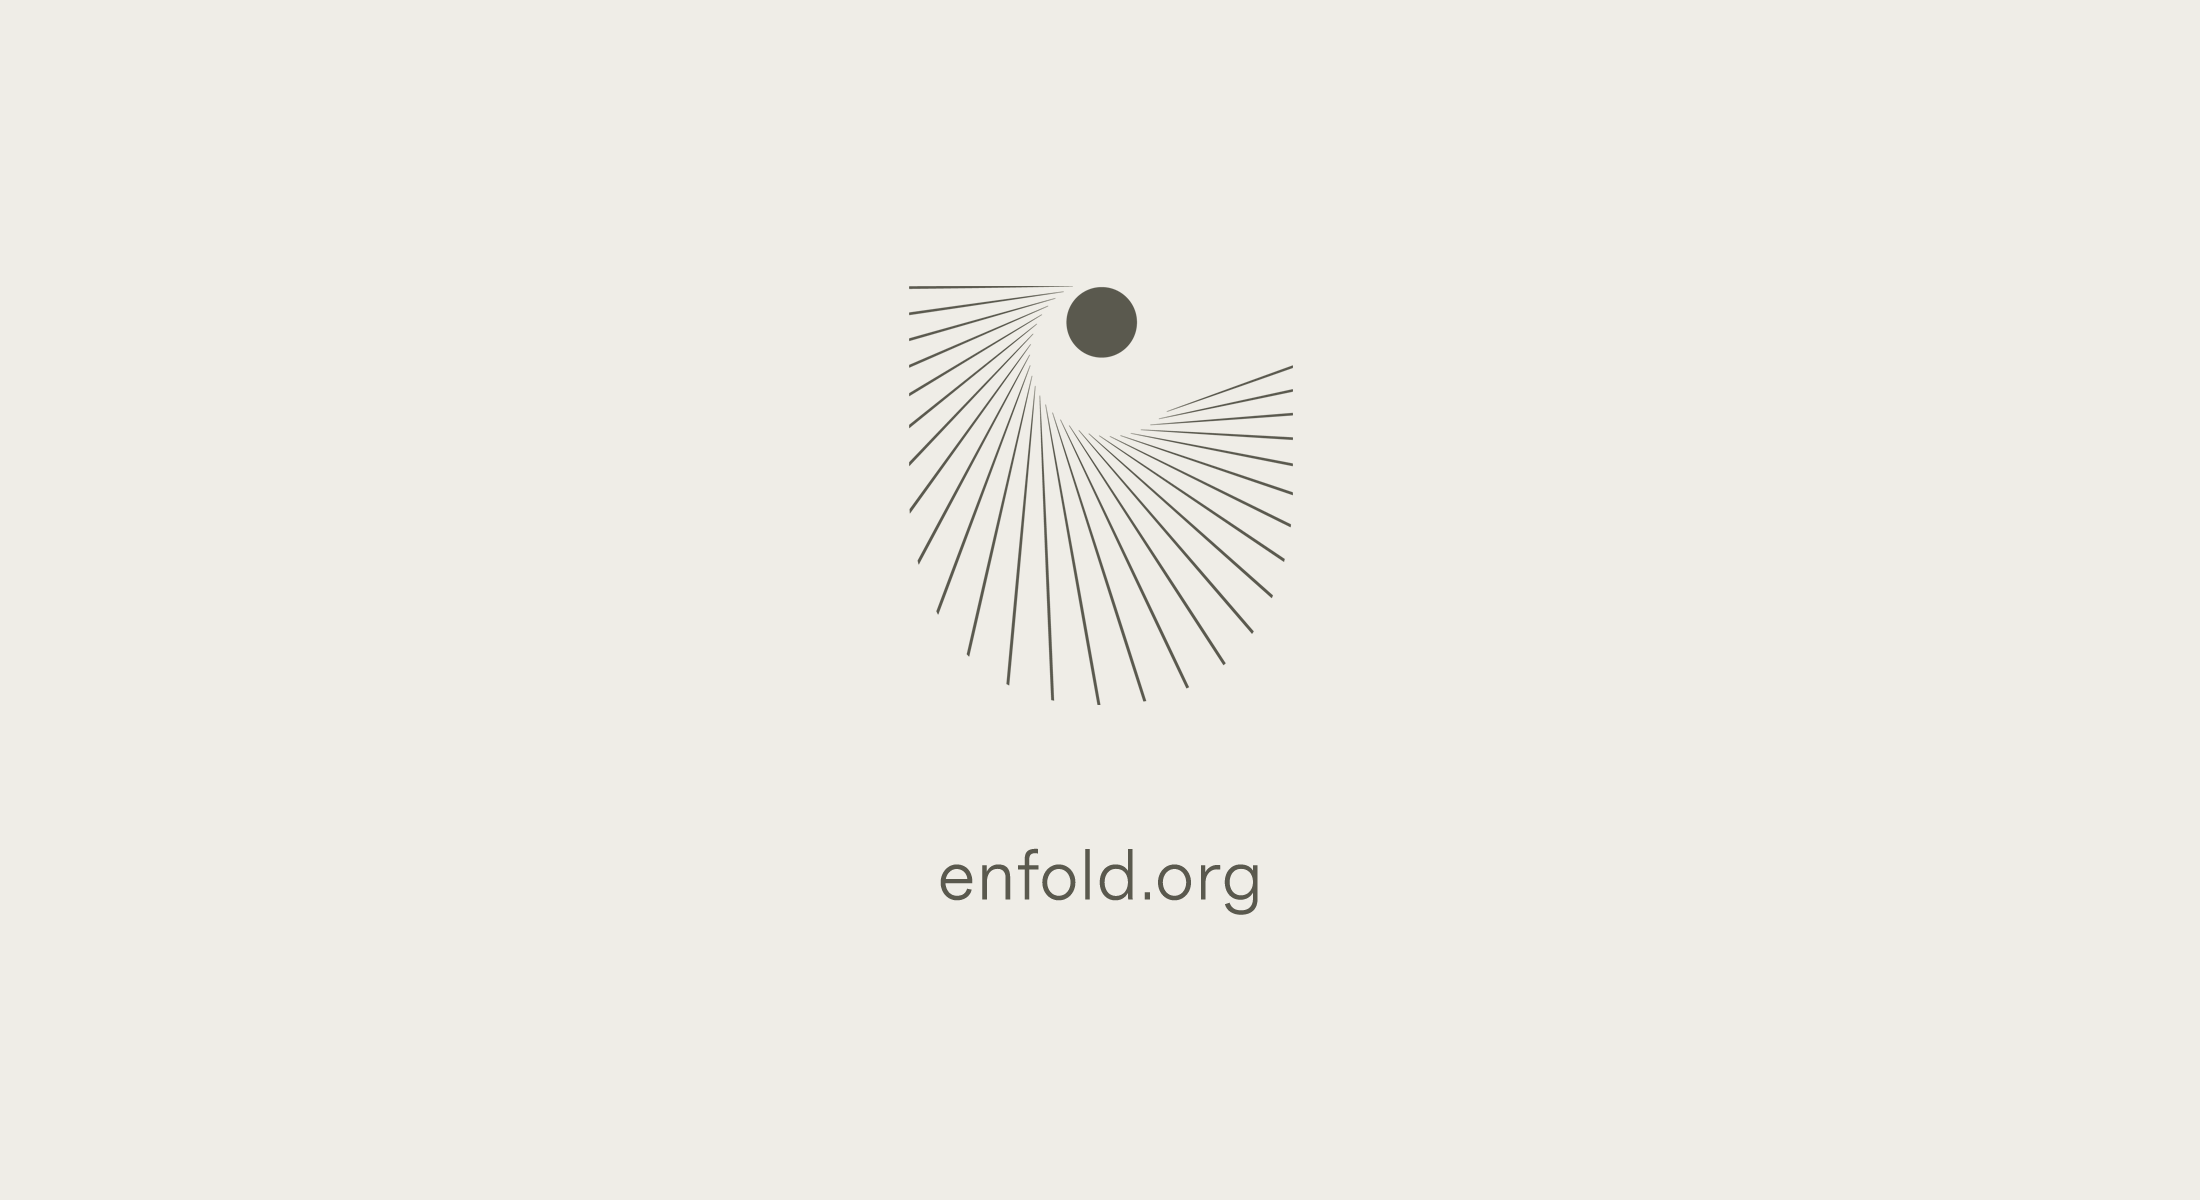 Enfold.org